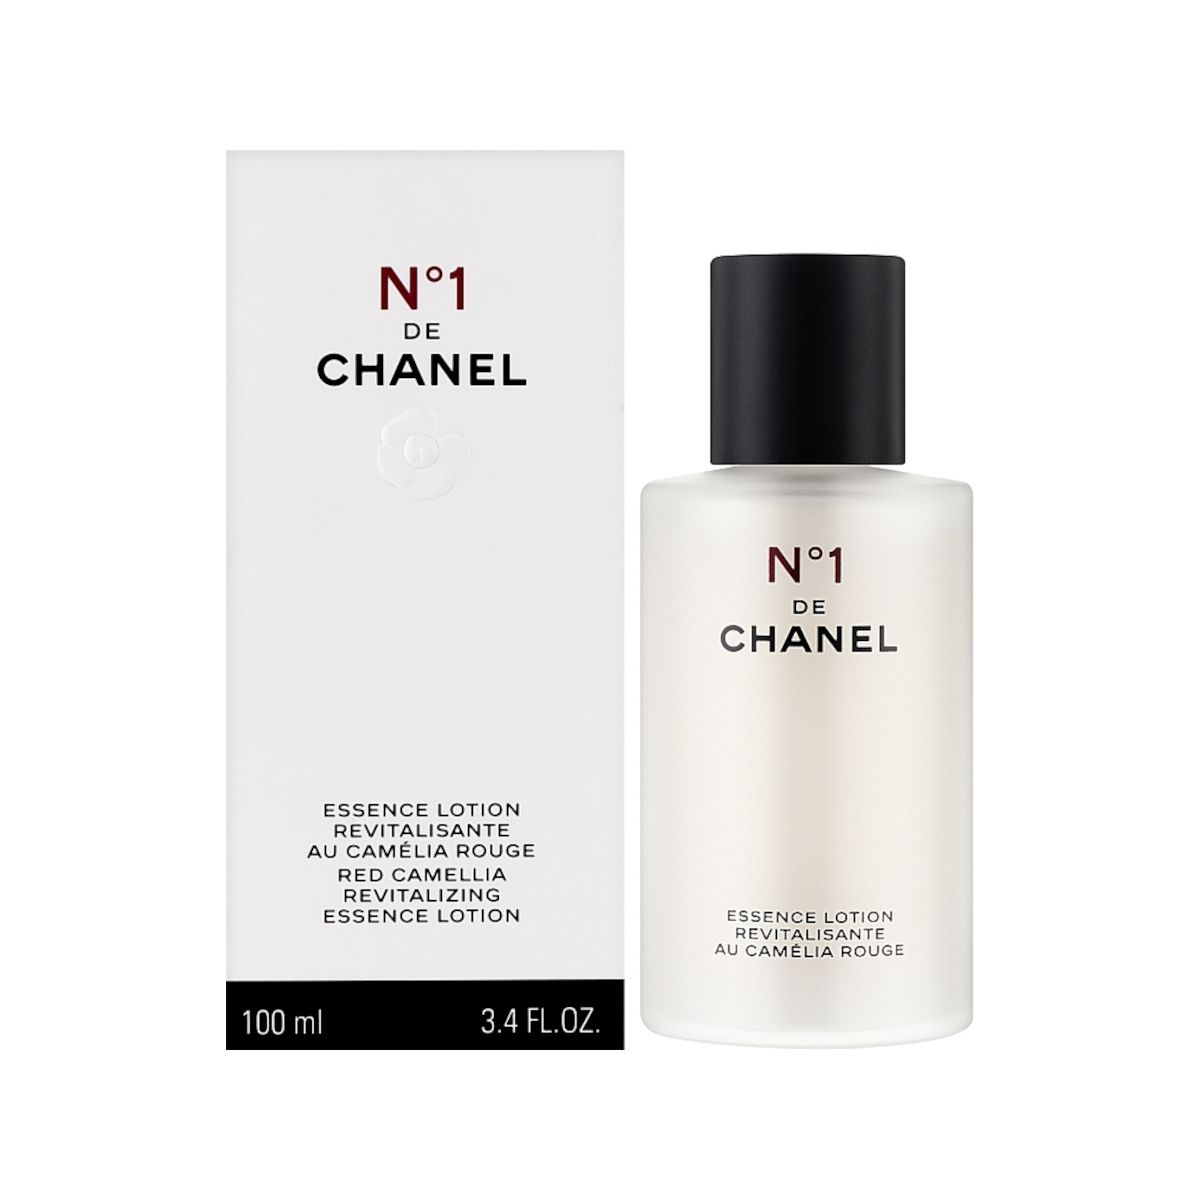 Chanel No.1 Red Camellia Revitalizing Essence Lotion 100ml rewitalizujący esencjonalny do twarzy i dekoltu